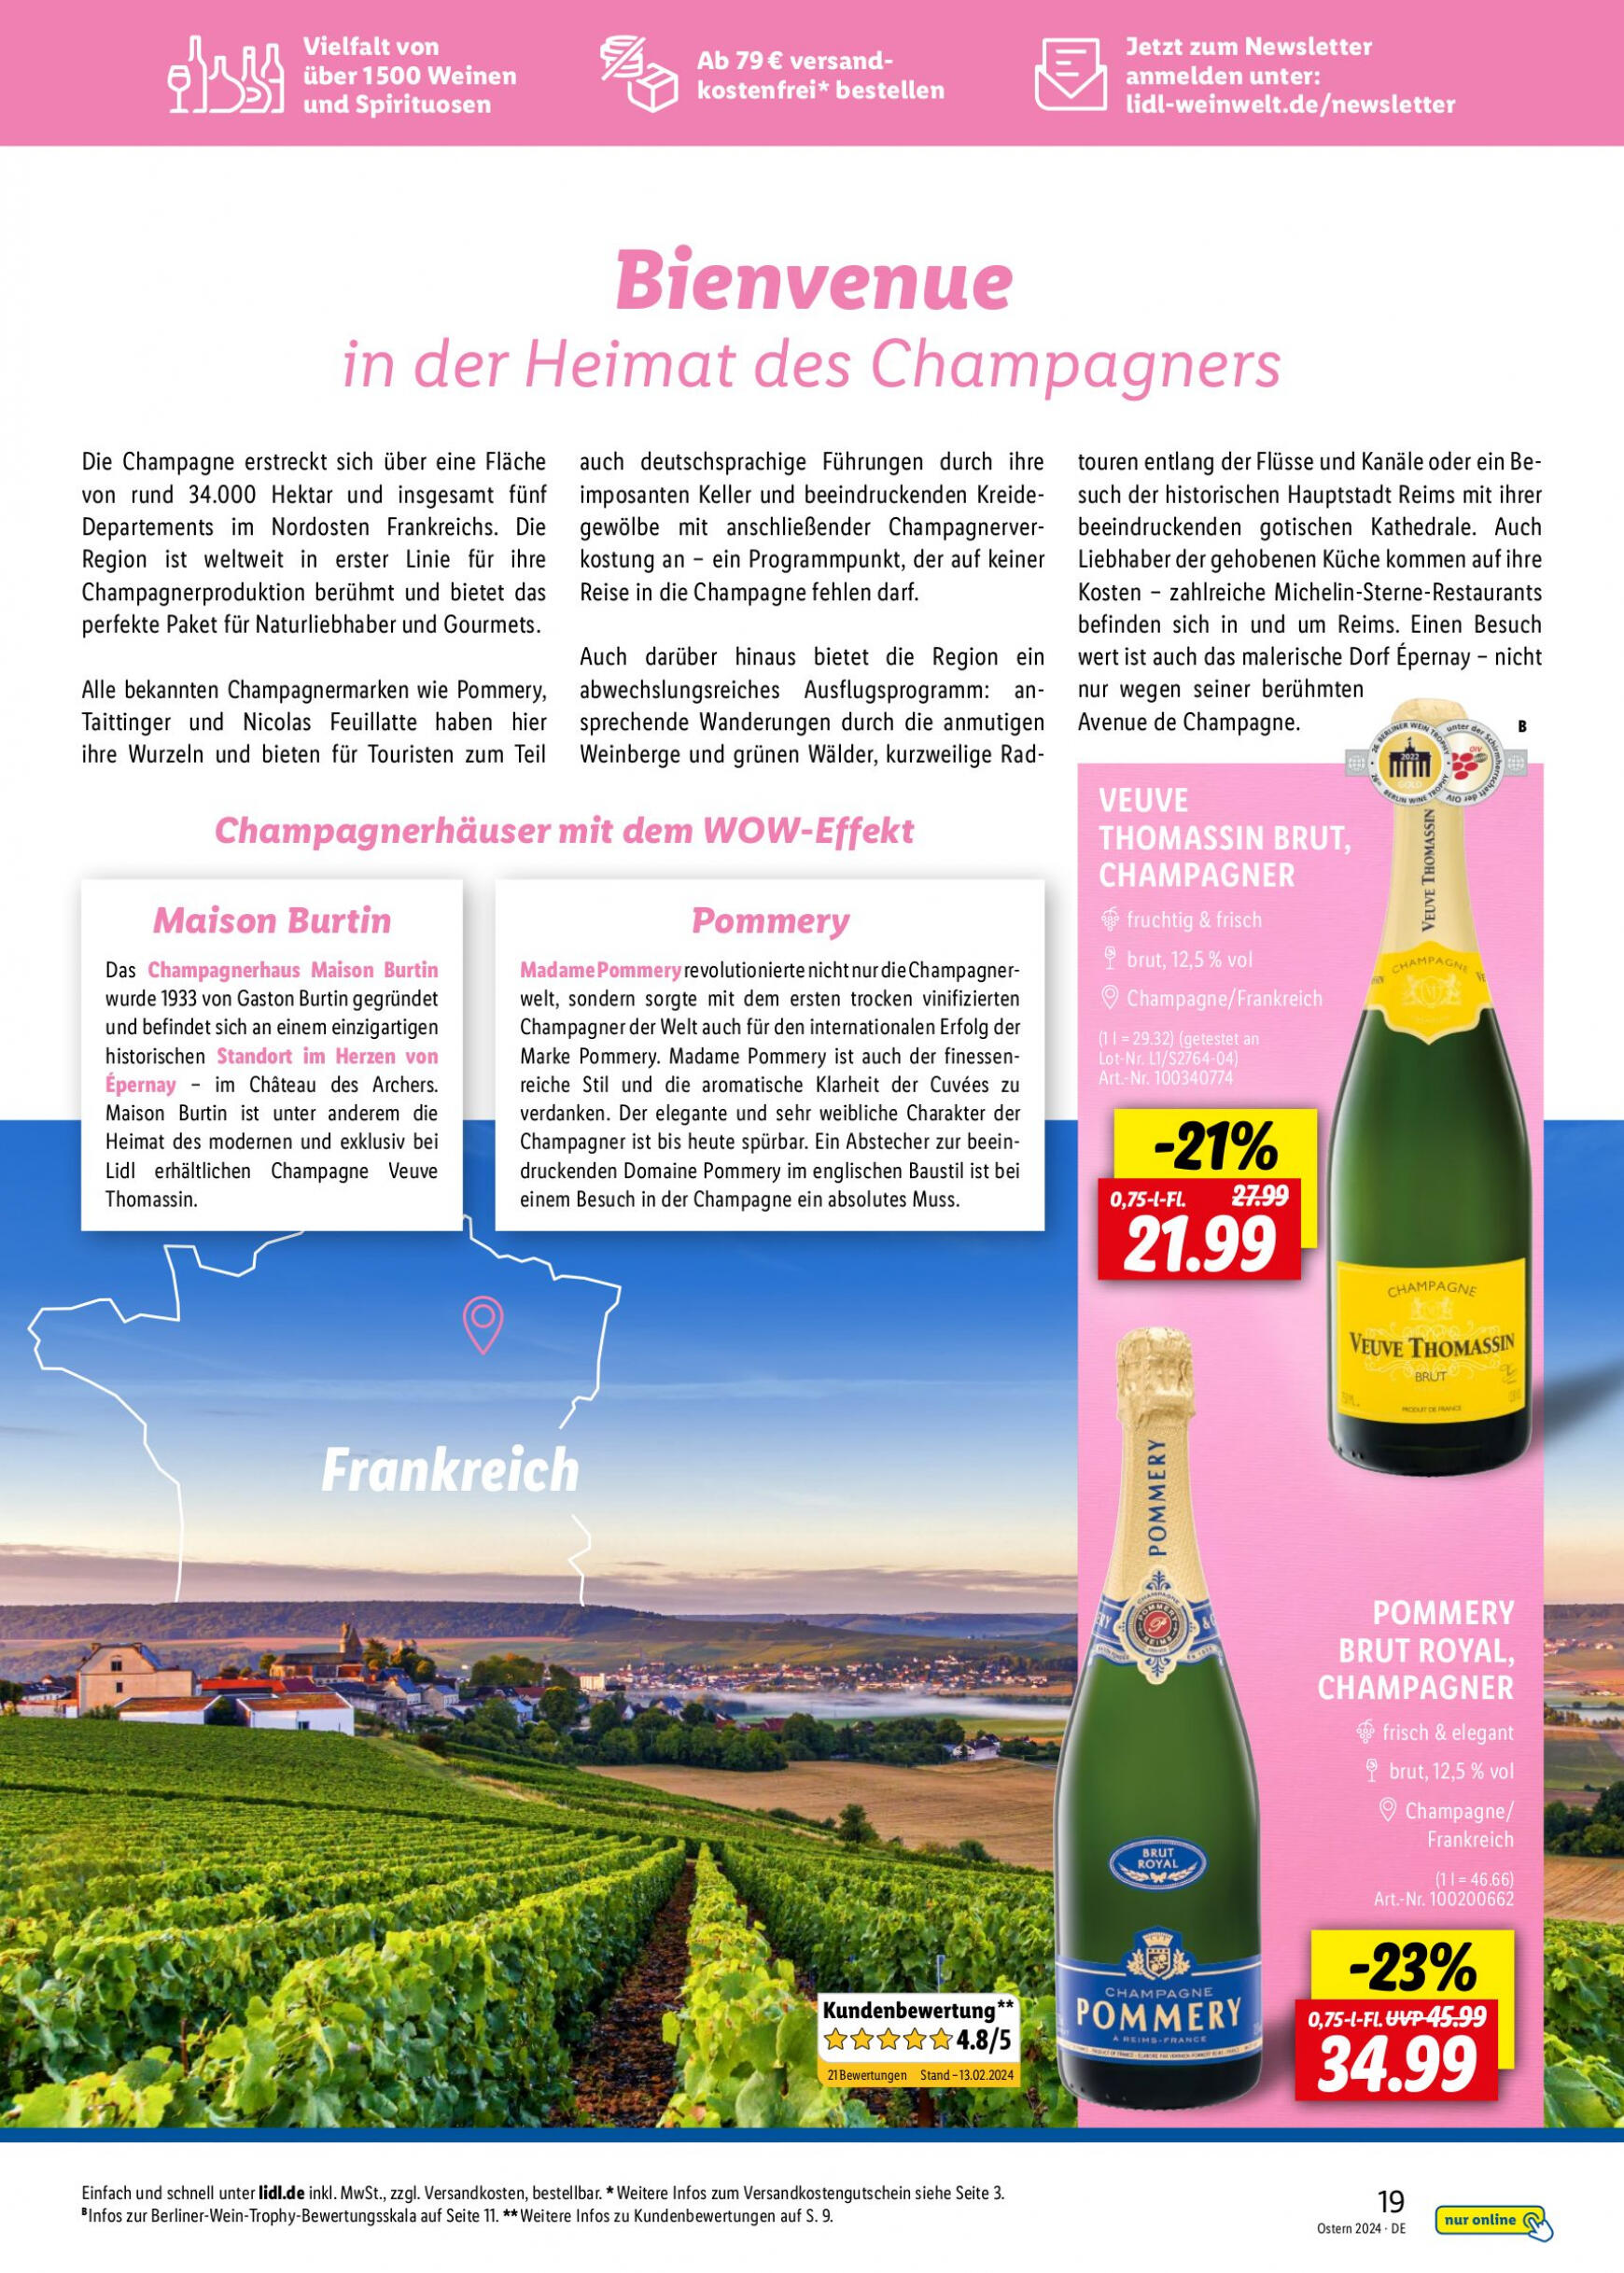 lidl - Flyer Lidl - Wein Entkorkt aktuell 04.03. - 30.04. - page: 19